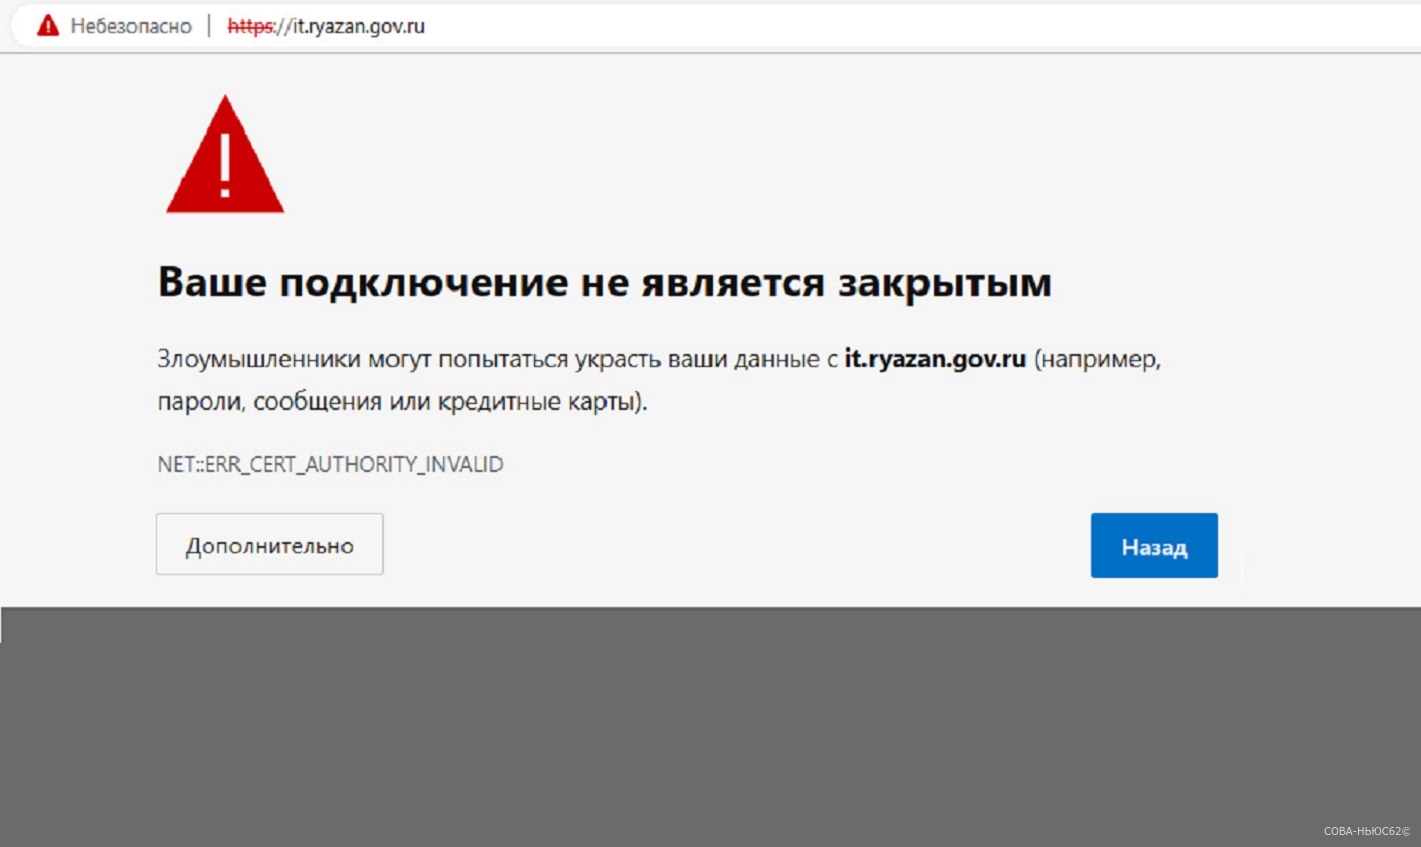 Браузеры блокировали вход на сайт рязанского министерства цифровизации